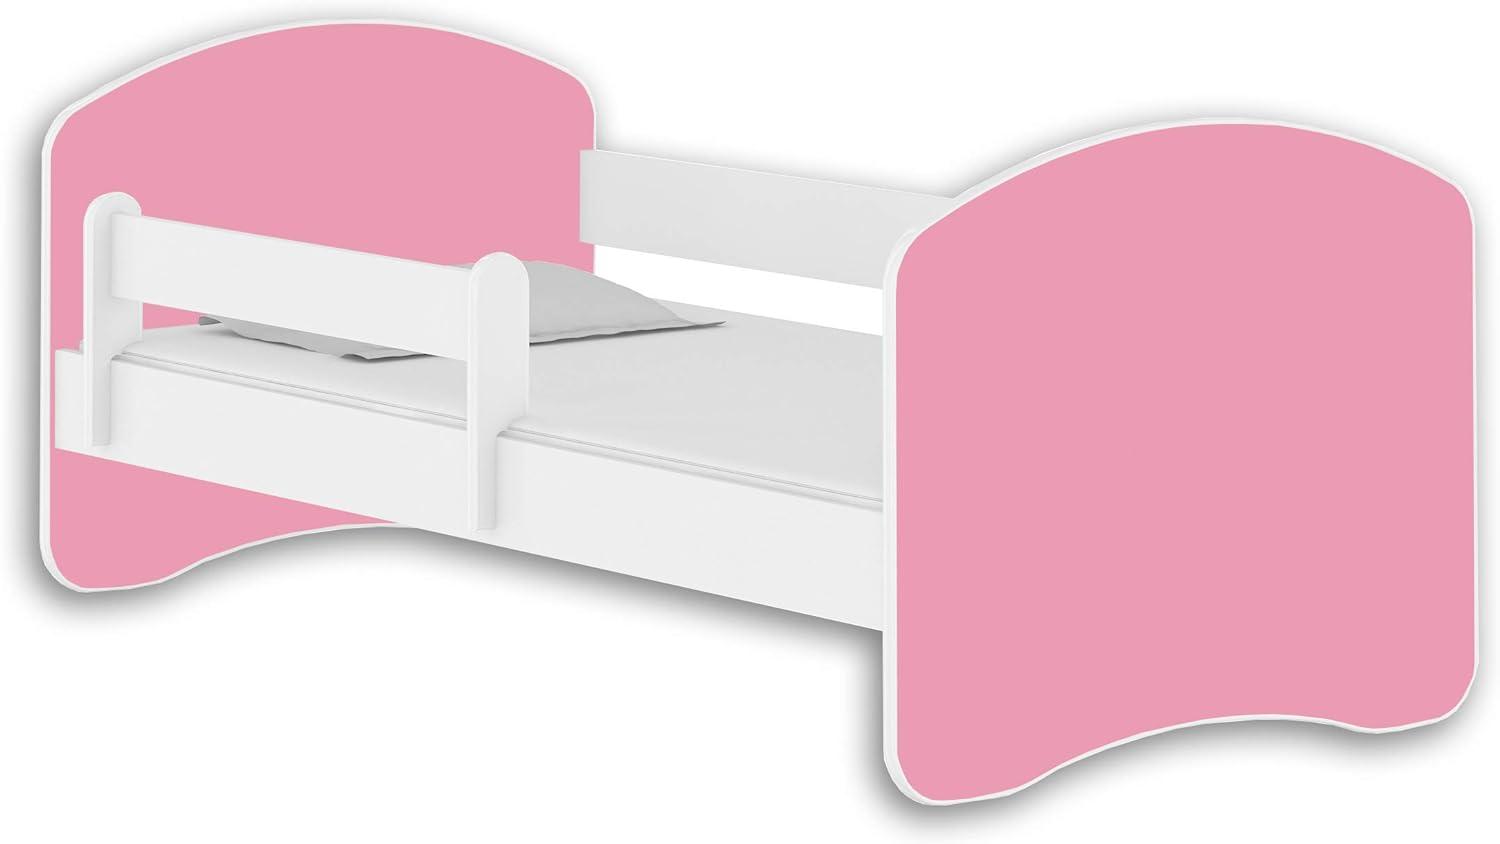 Jugendbett Kinderbett mit einer Schublade mit Rausfallschutz und Matratze Weiß ACMA II (160x80 cm, Weiß - Rosa) Bild 1